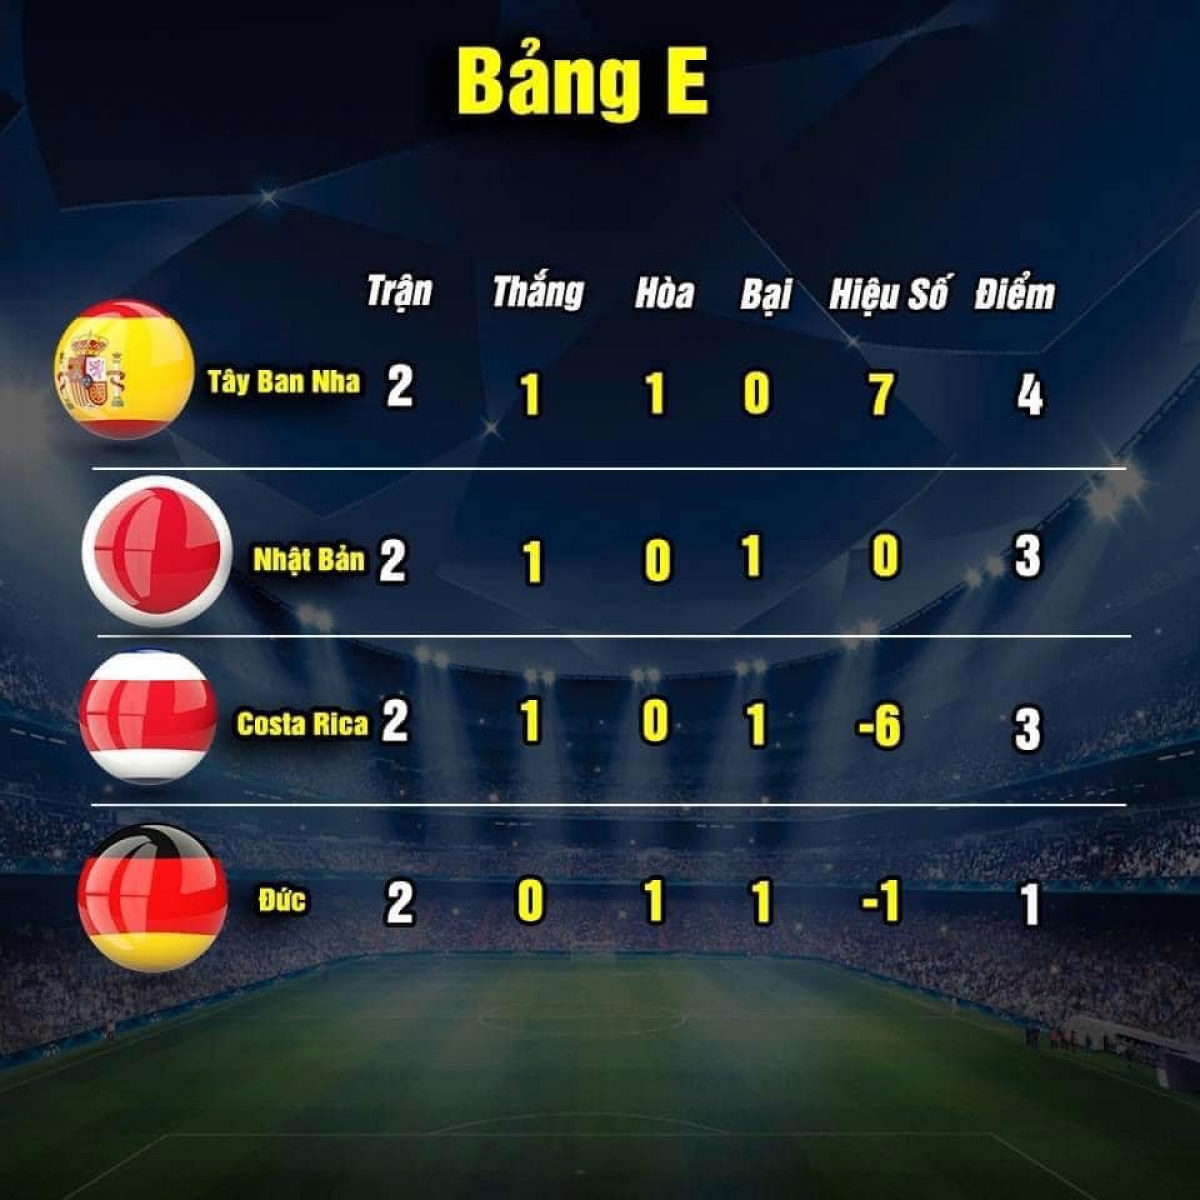 Cục diện bảng E sau hai lượt trận (ảnh: Thethao.vn) 